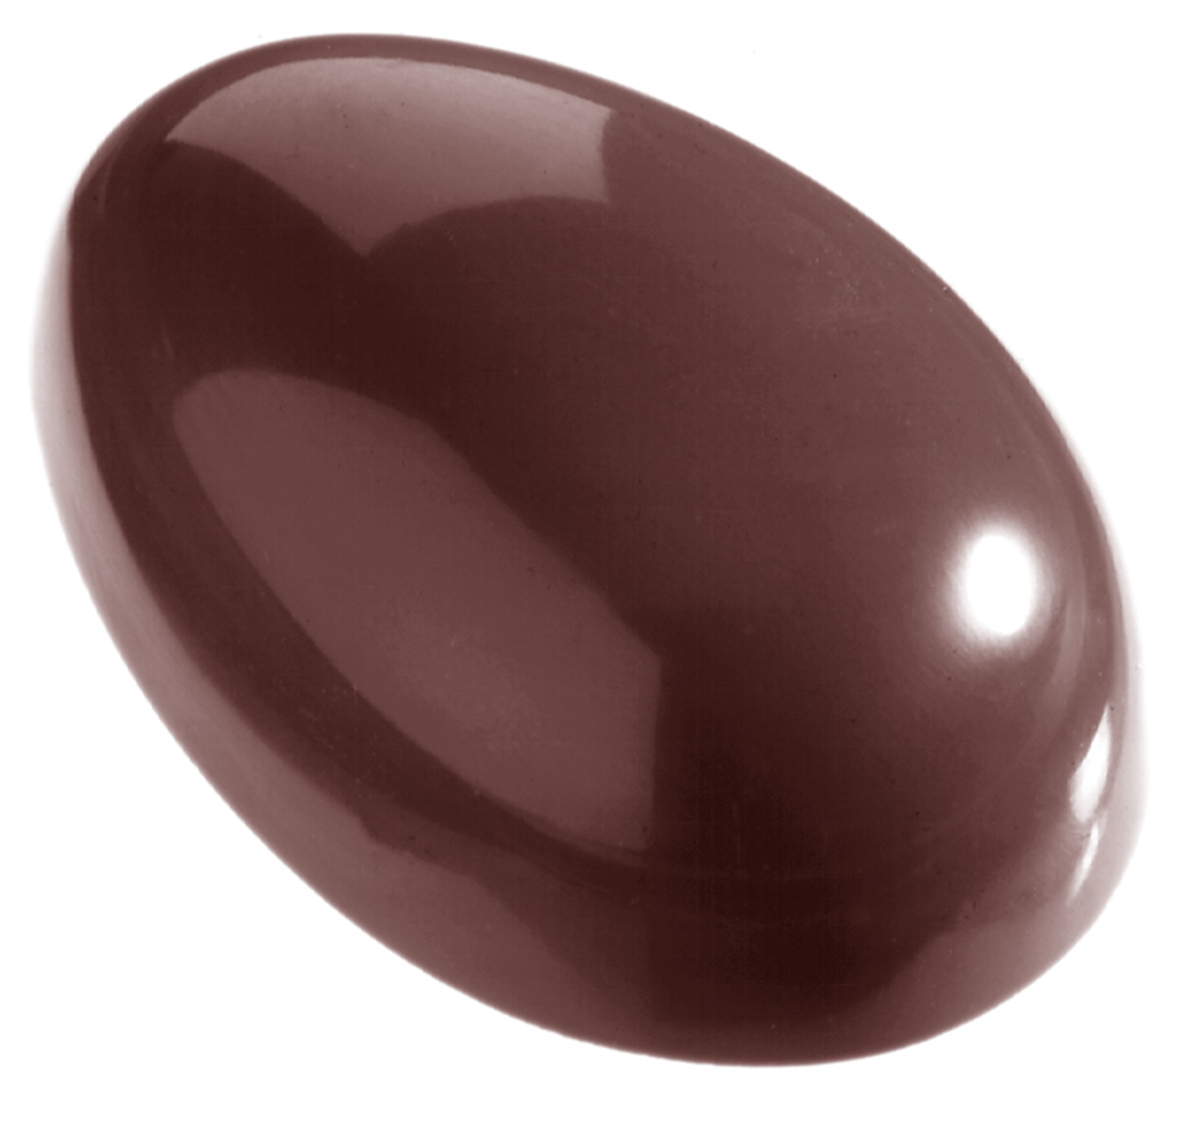 Billede af Professionel chokoladeform i polycarbonat - Egg smooth 4,3 cm CW1317